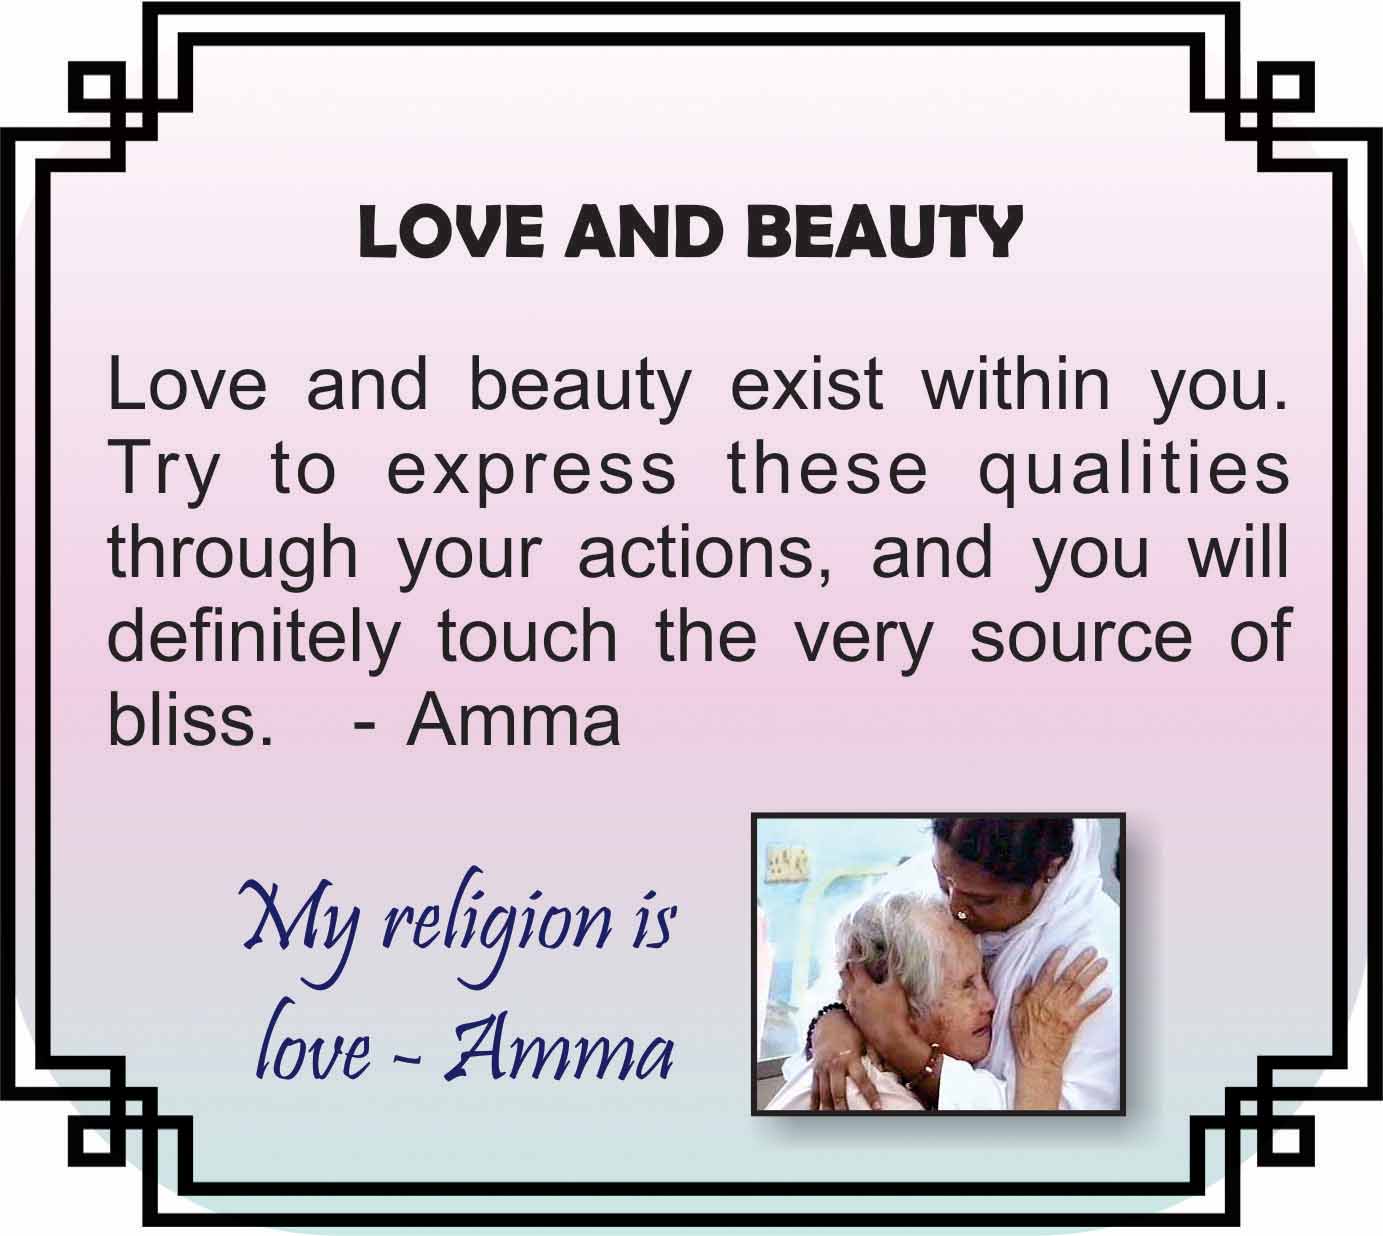 Amma love and beauty